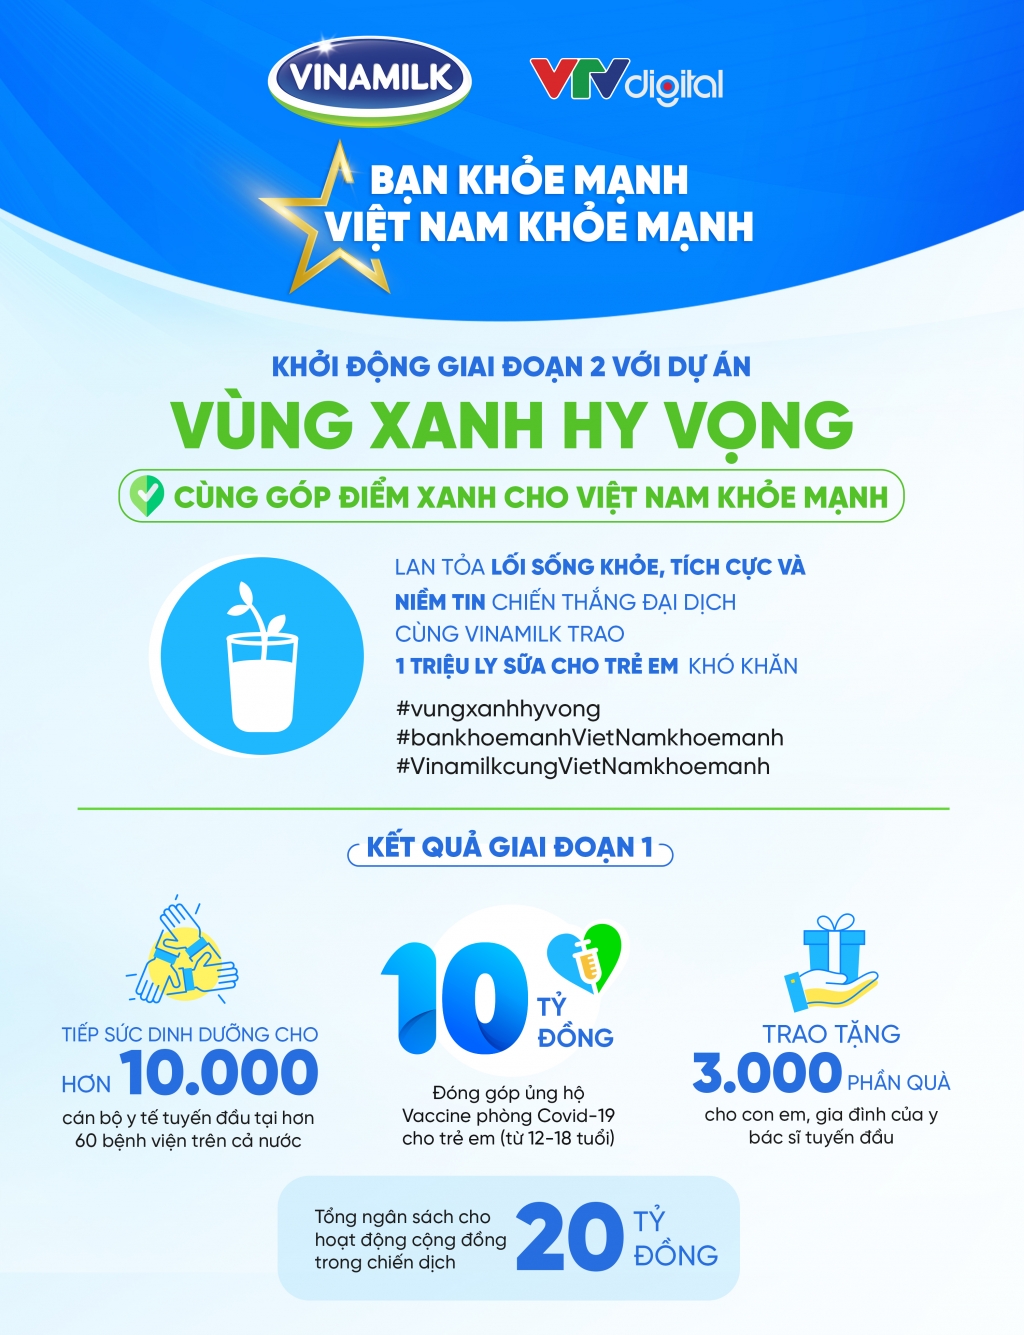 Tổng quan các hoạt động trong khuôn khổ chiến dịch “Bạn Khỏe Mạnh, Việt Nam Khỏe Mạnh